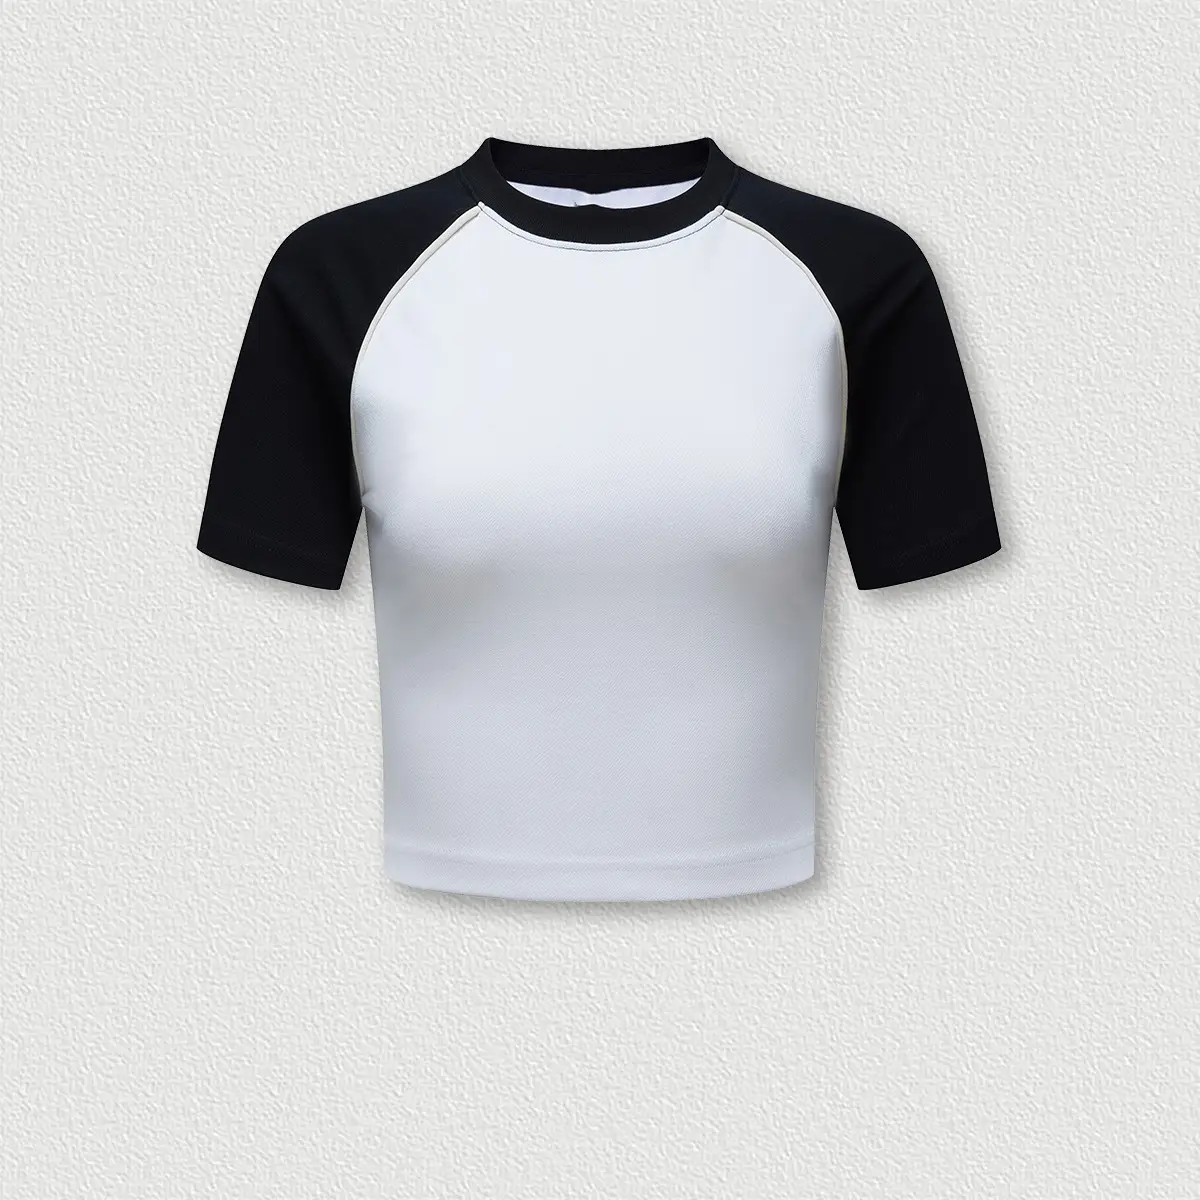 Moda promozionale all'ingrosso a buon mercato Logo personalizzato donna t-shirt Slim Fit Raglan di alta qualità